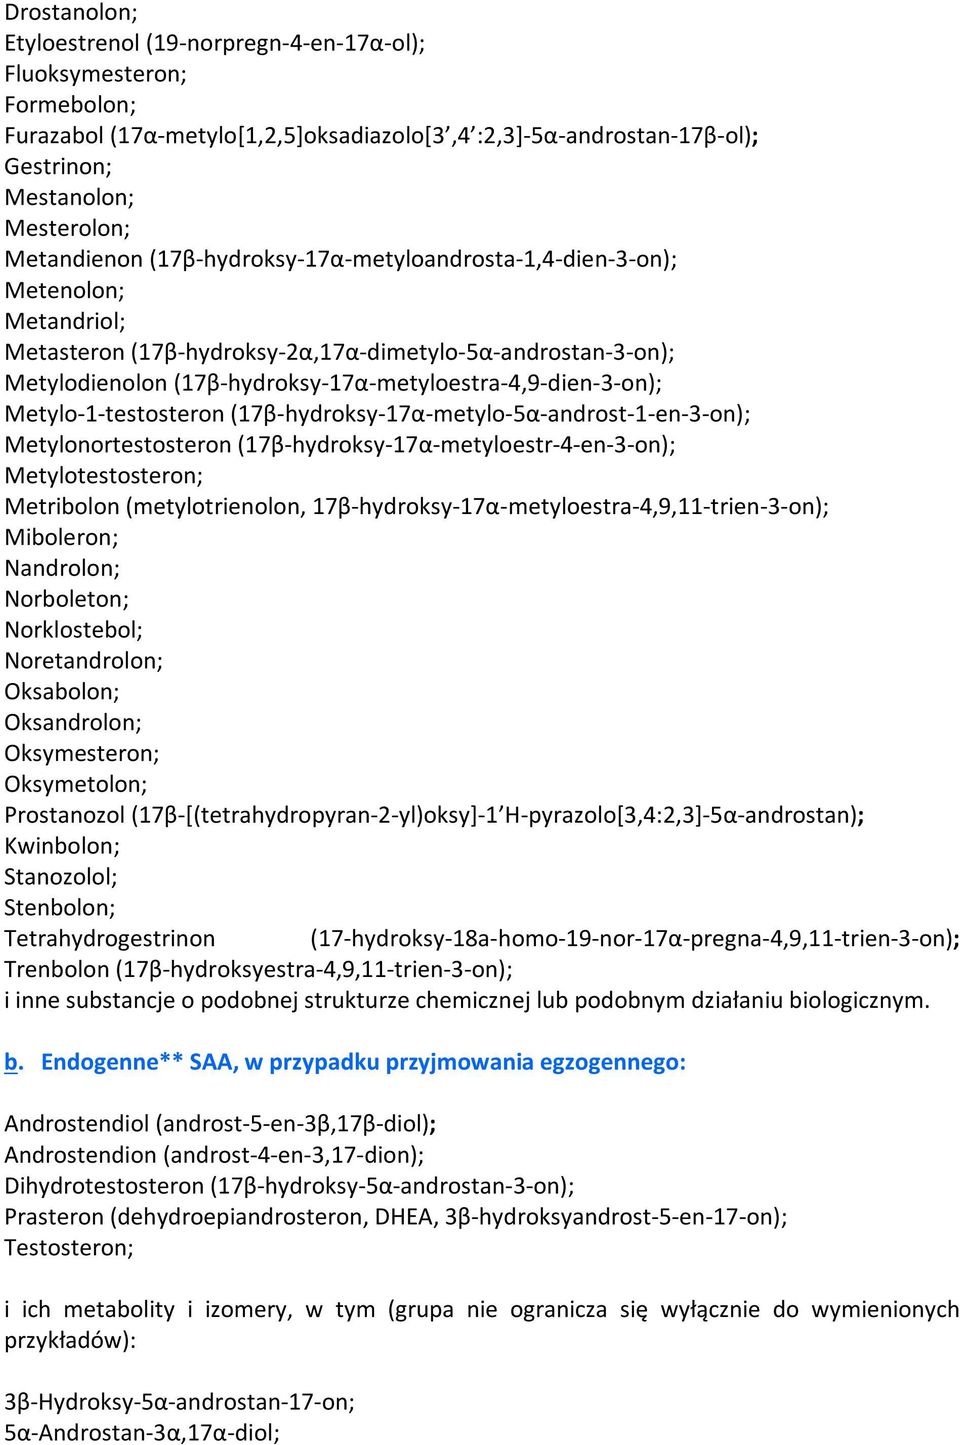 (17β-hydroksy-17α-metyloestra-4,9-dien-3-on); Metylo-1-testosteron (17β-hydroksy-17α-metylo-5α-androst-1-en-3-on); Metylonortestosteron (17β-hydroksy-17α-metyloestr-4-en-3-on); Metylotestosteron;